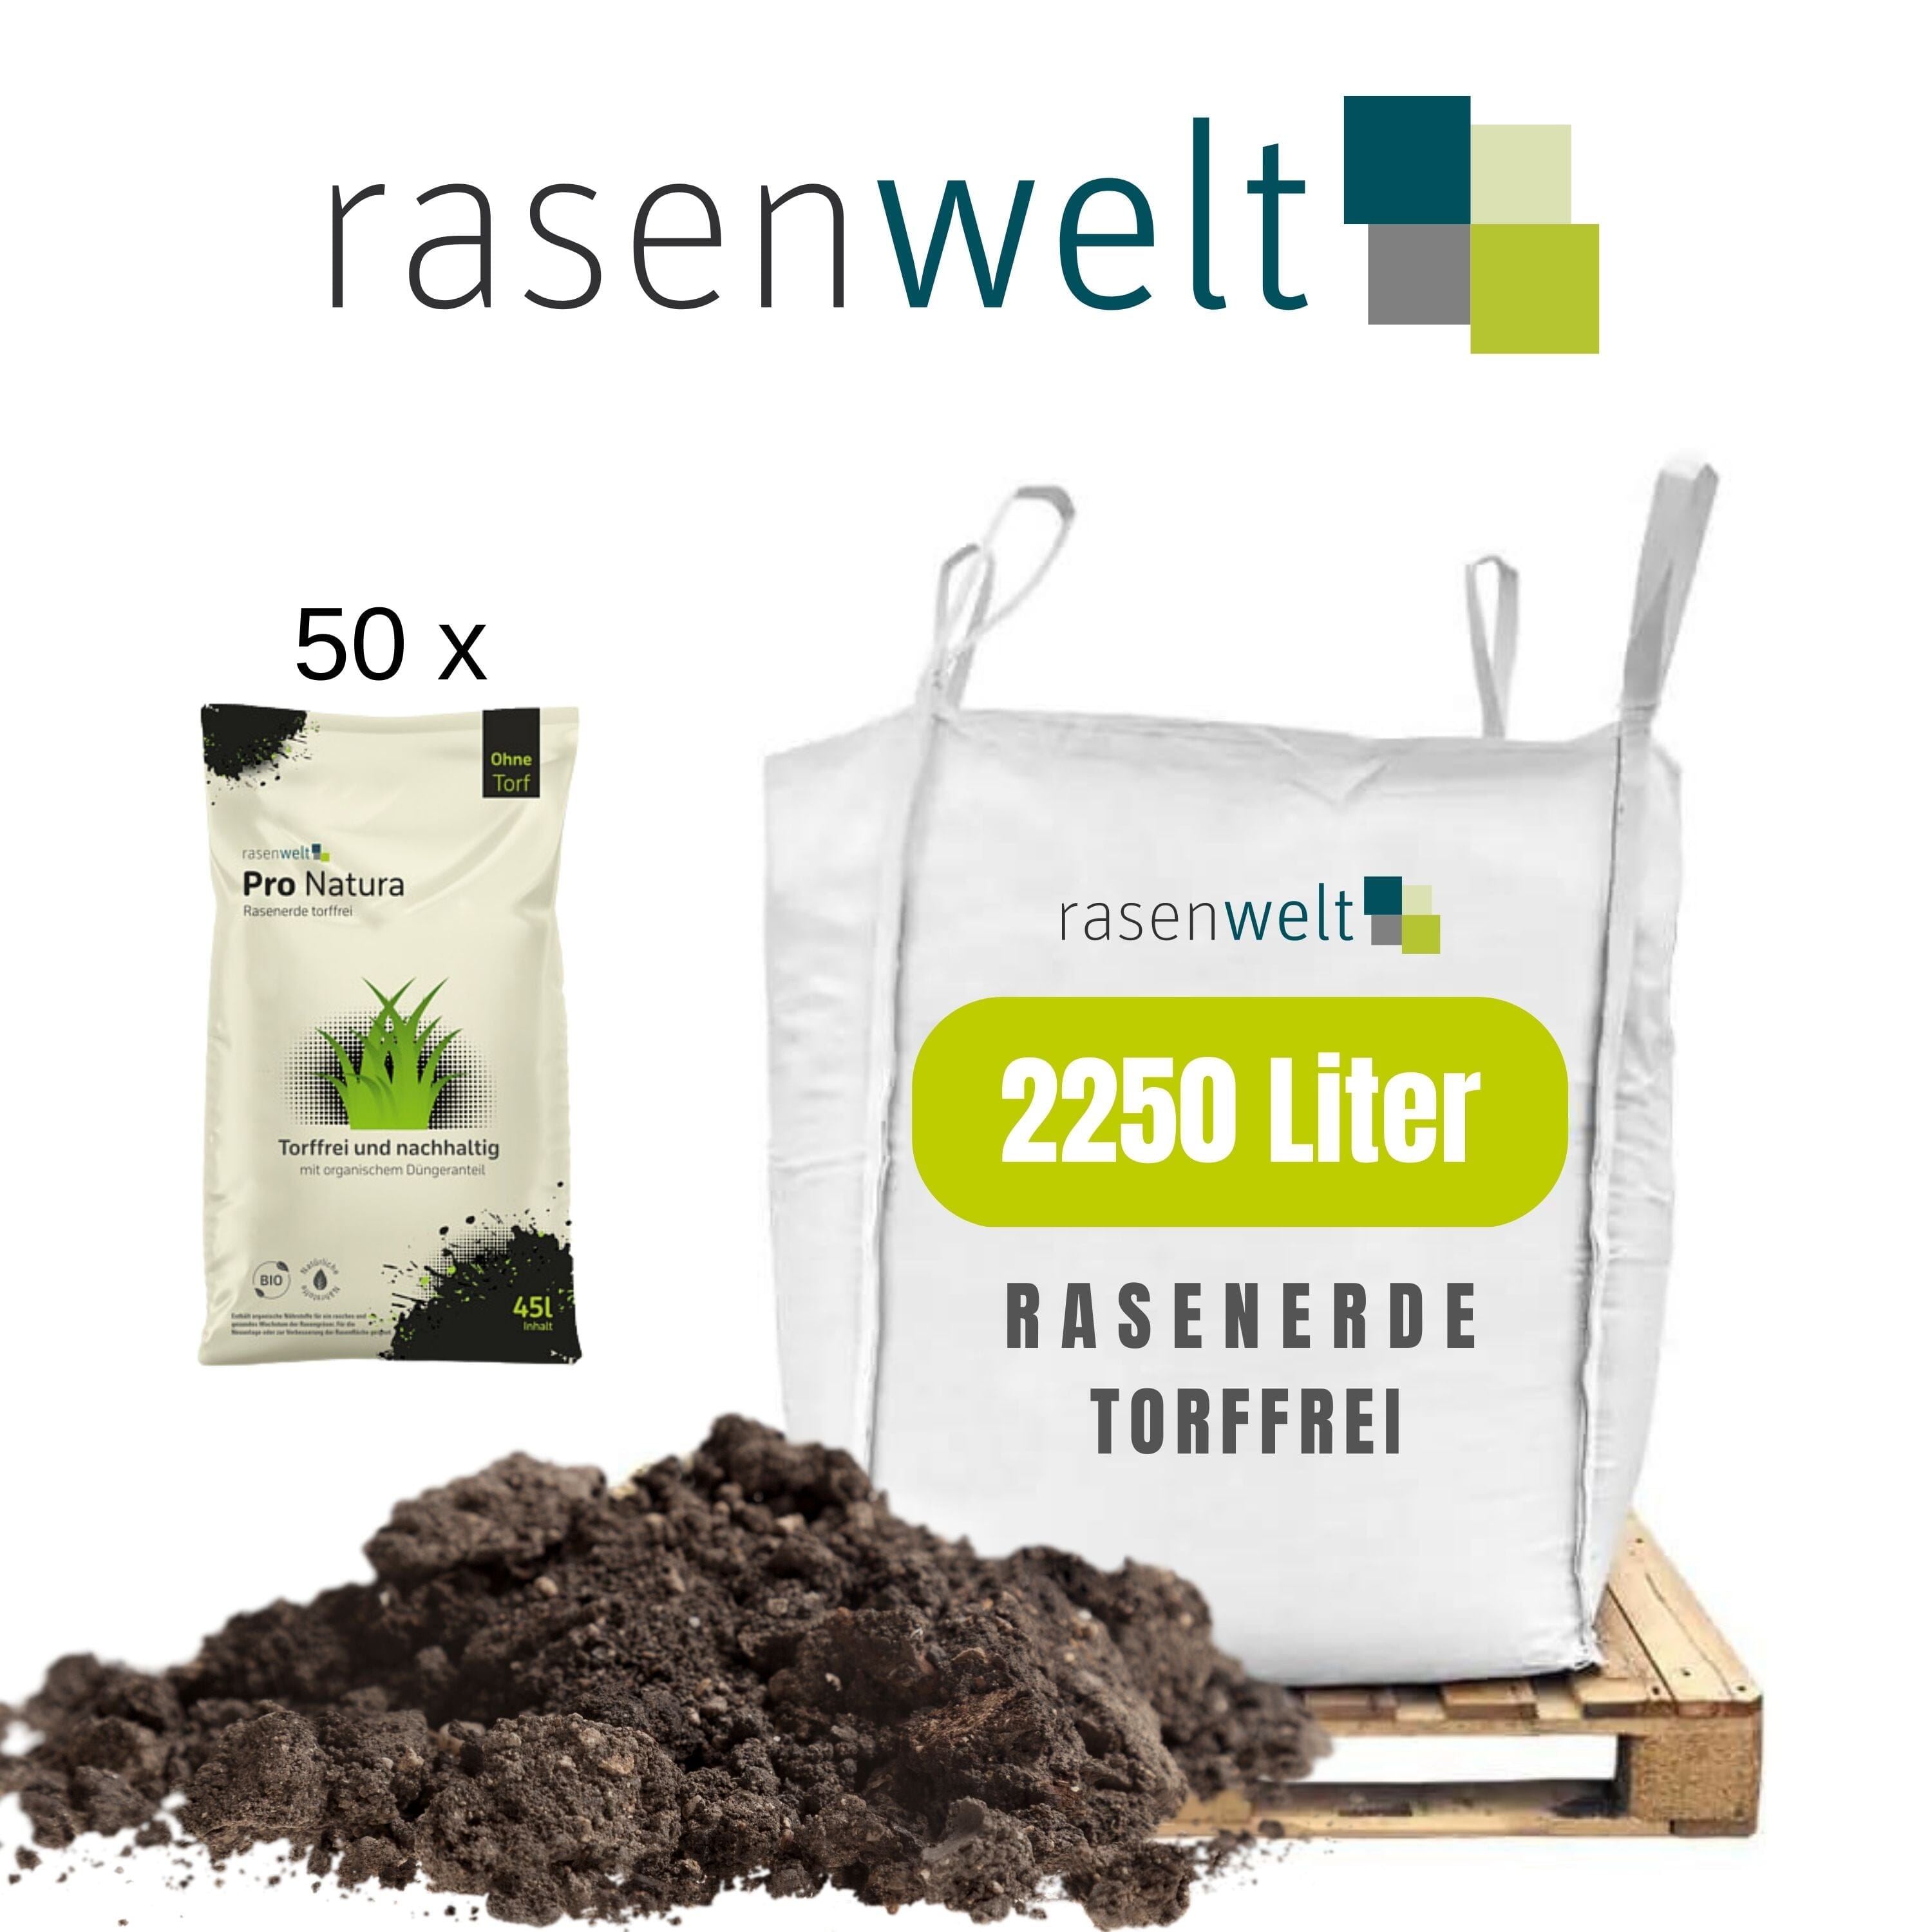 Rasenwelt Veenvrije Gazongrond - 2250 liter | 50 x 45 L op pallet ARENA